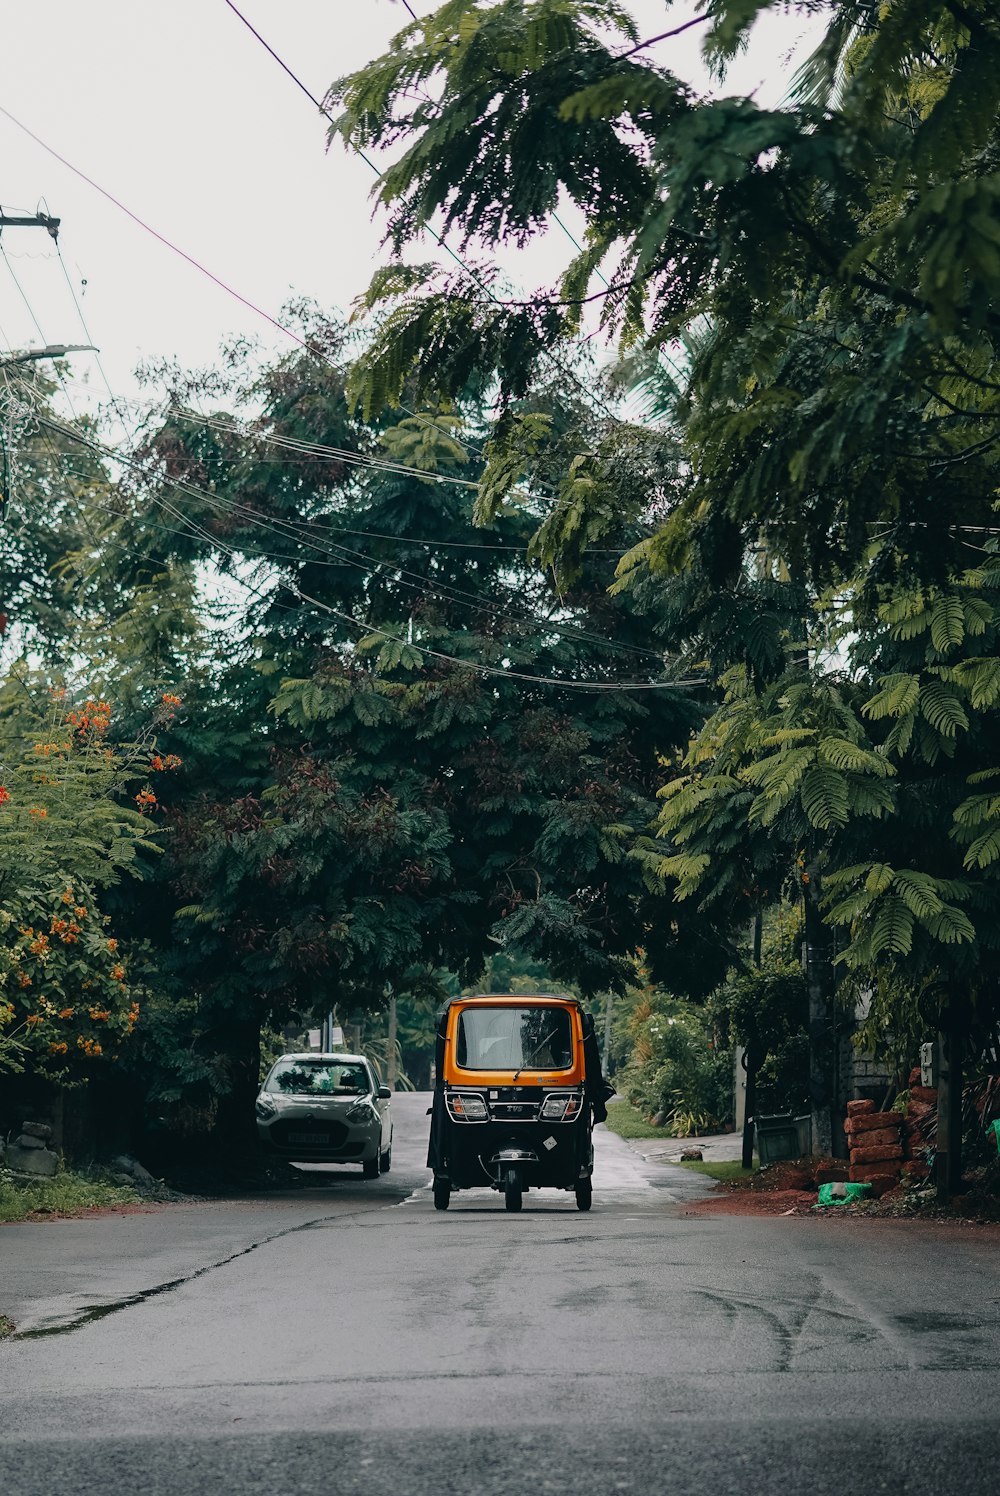 Une voiture roulant dans une rue à côté d’une forêt